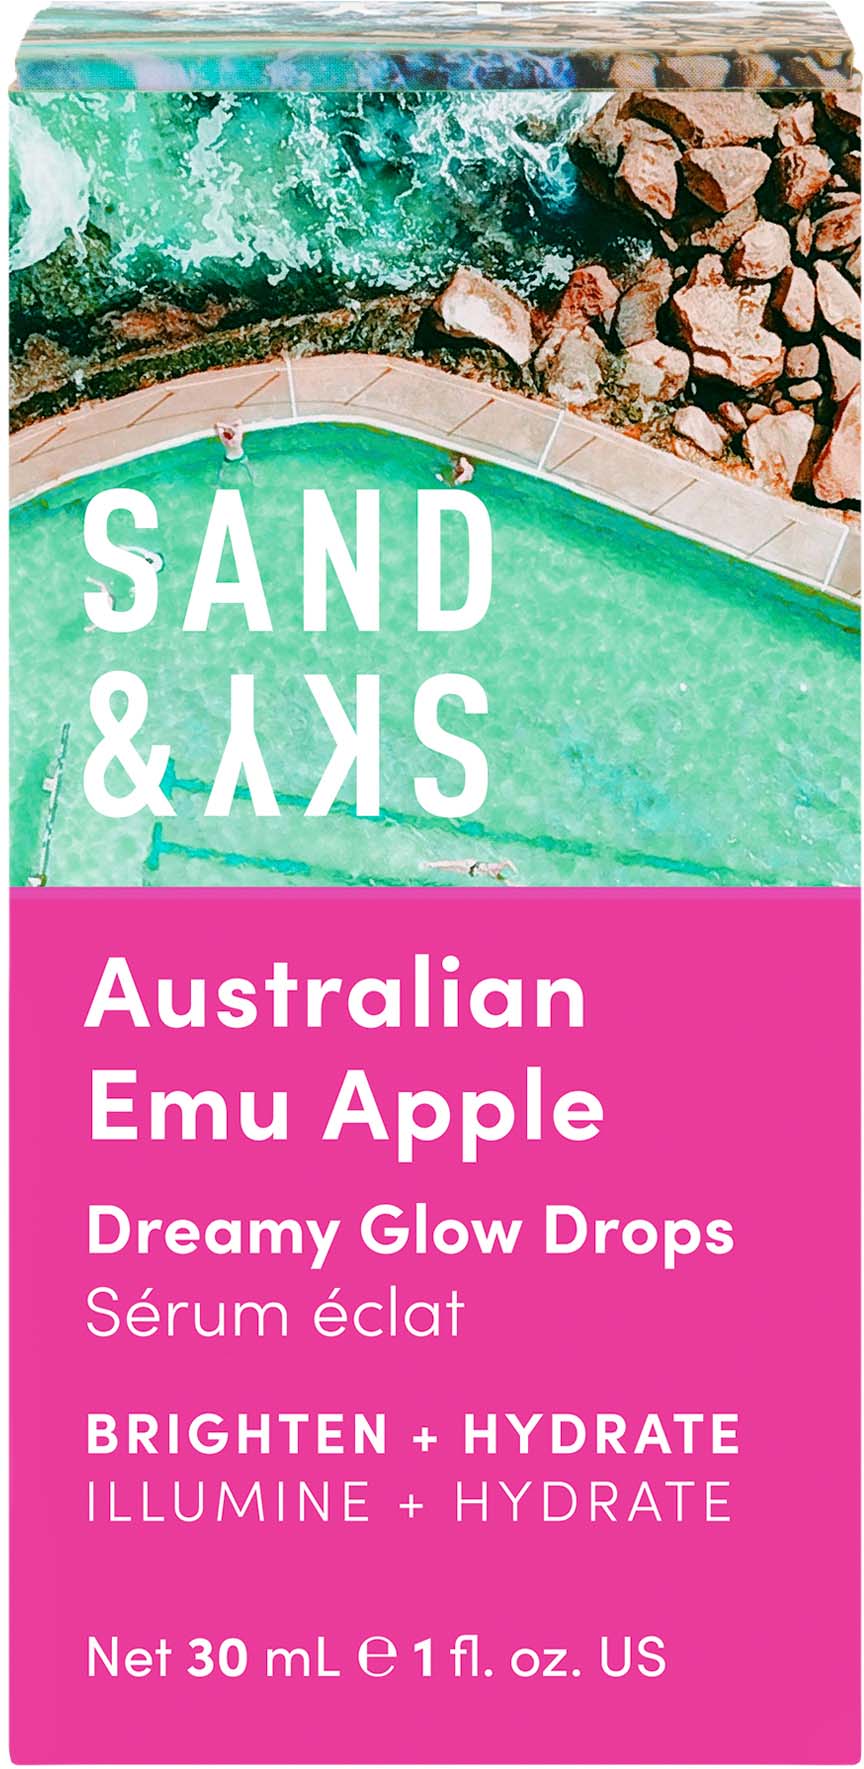 Sand & Sky Australian Emu Apple Dreamy Glow Drops at BEAUTY BAY